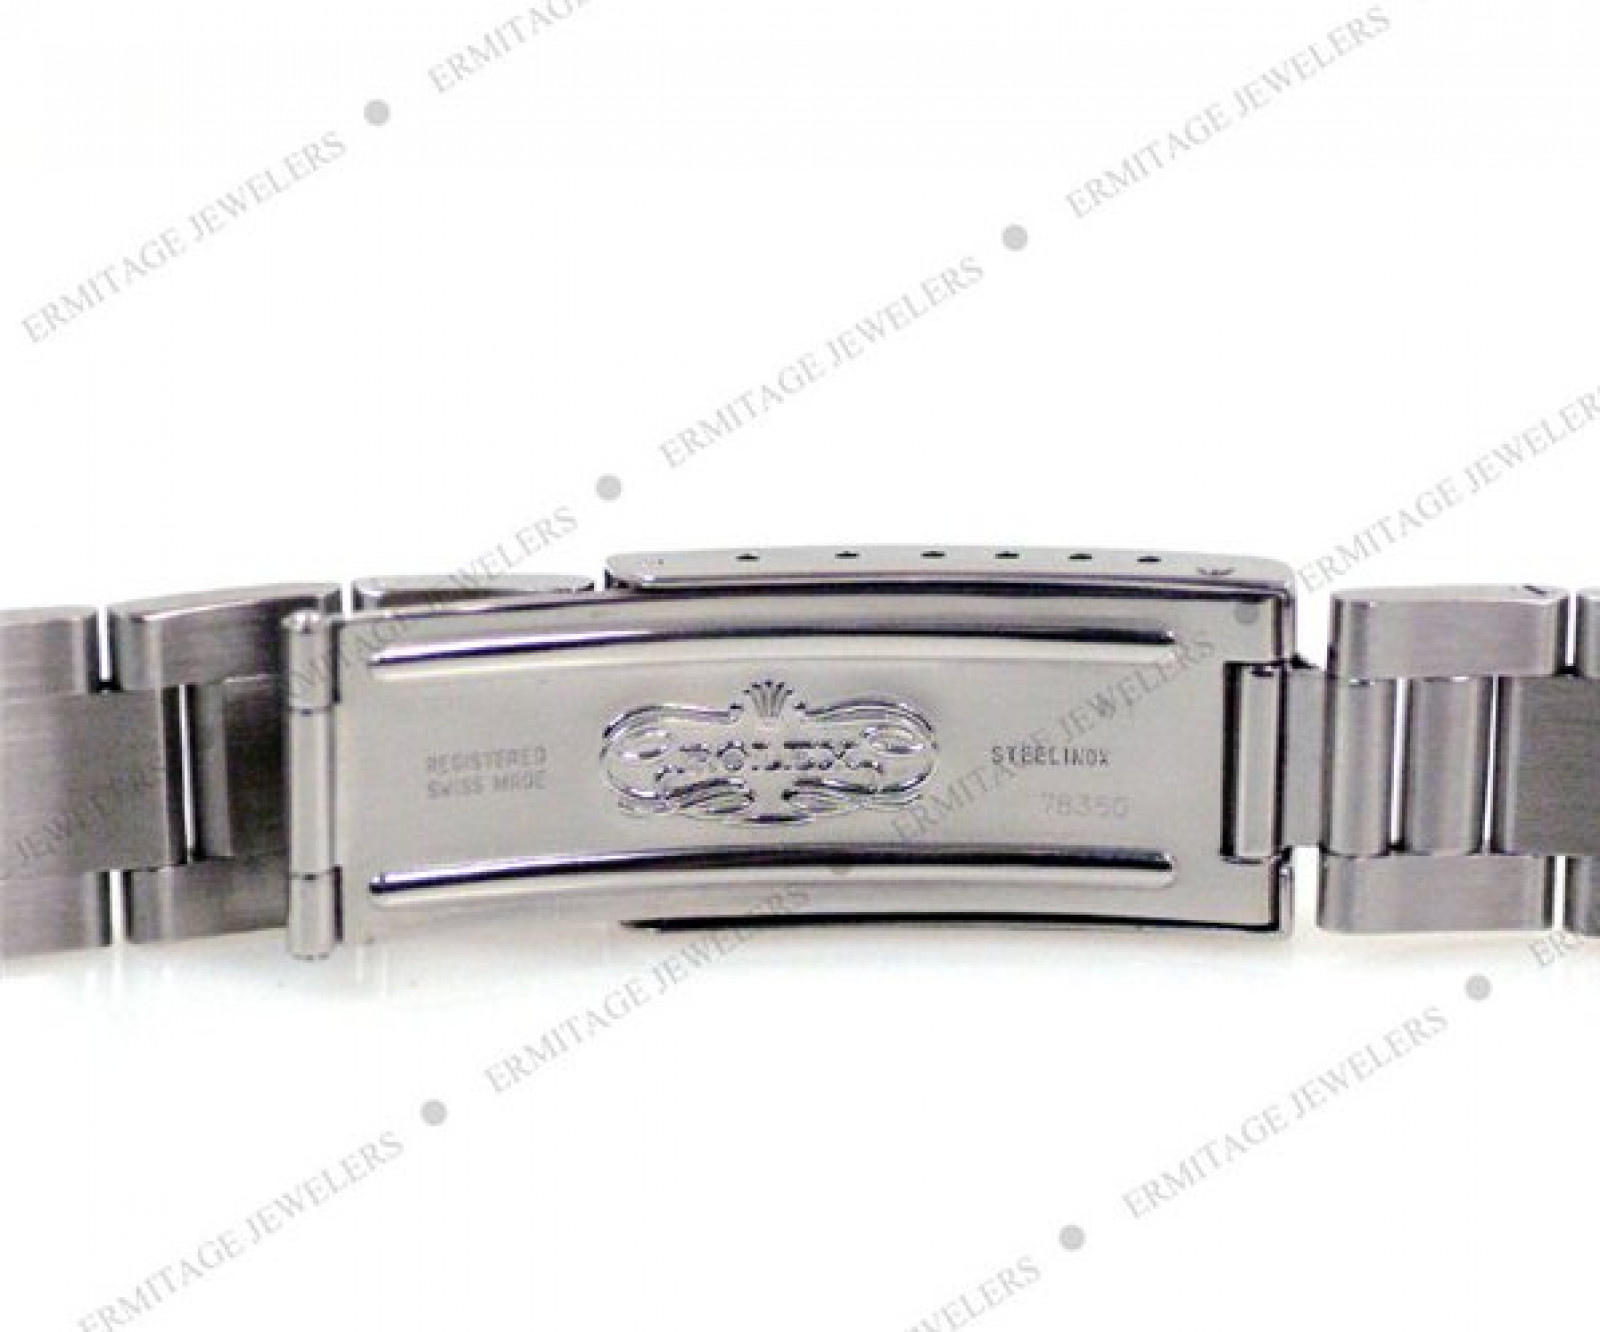 Rolex Date 15210 Steel White 1996